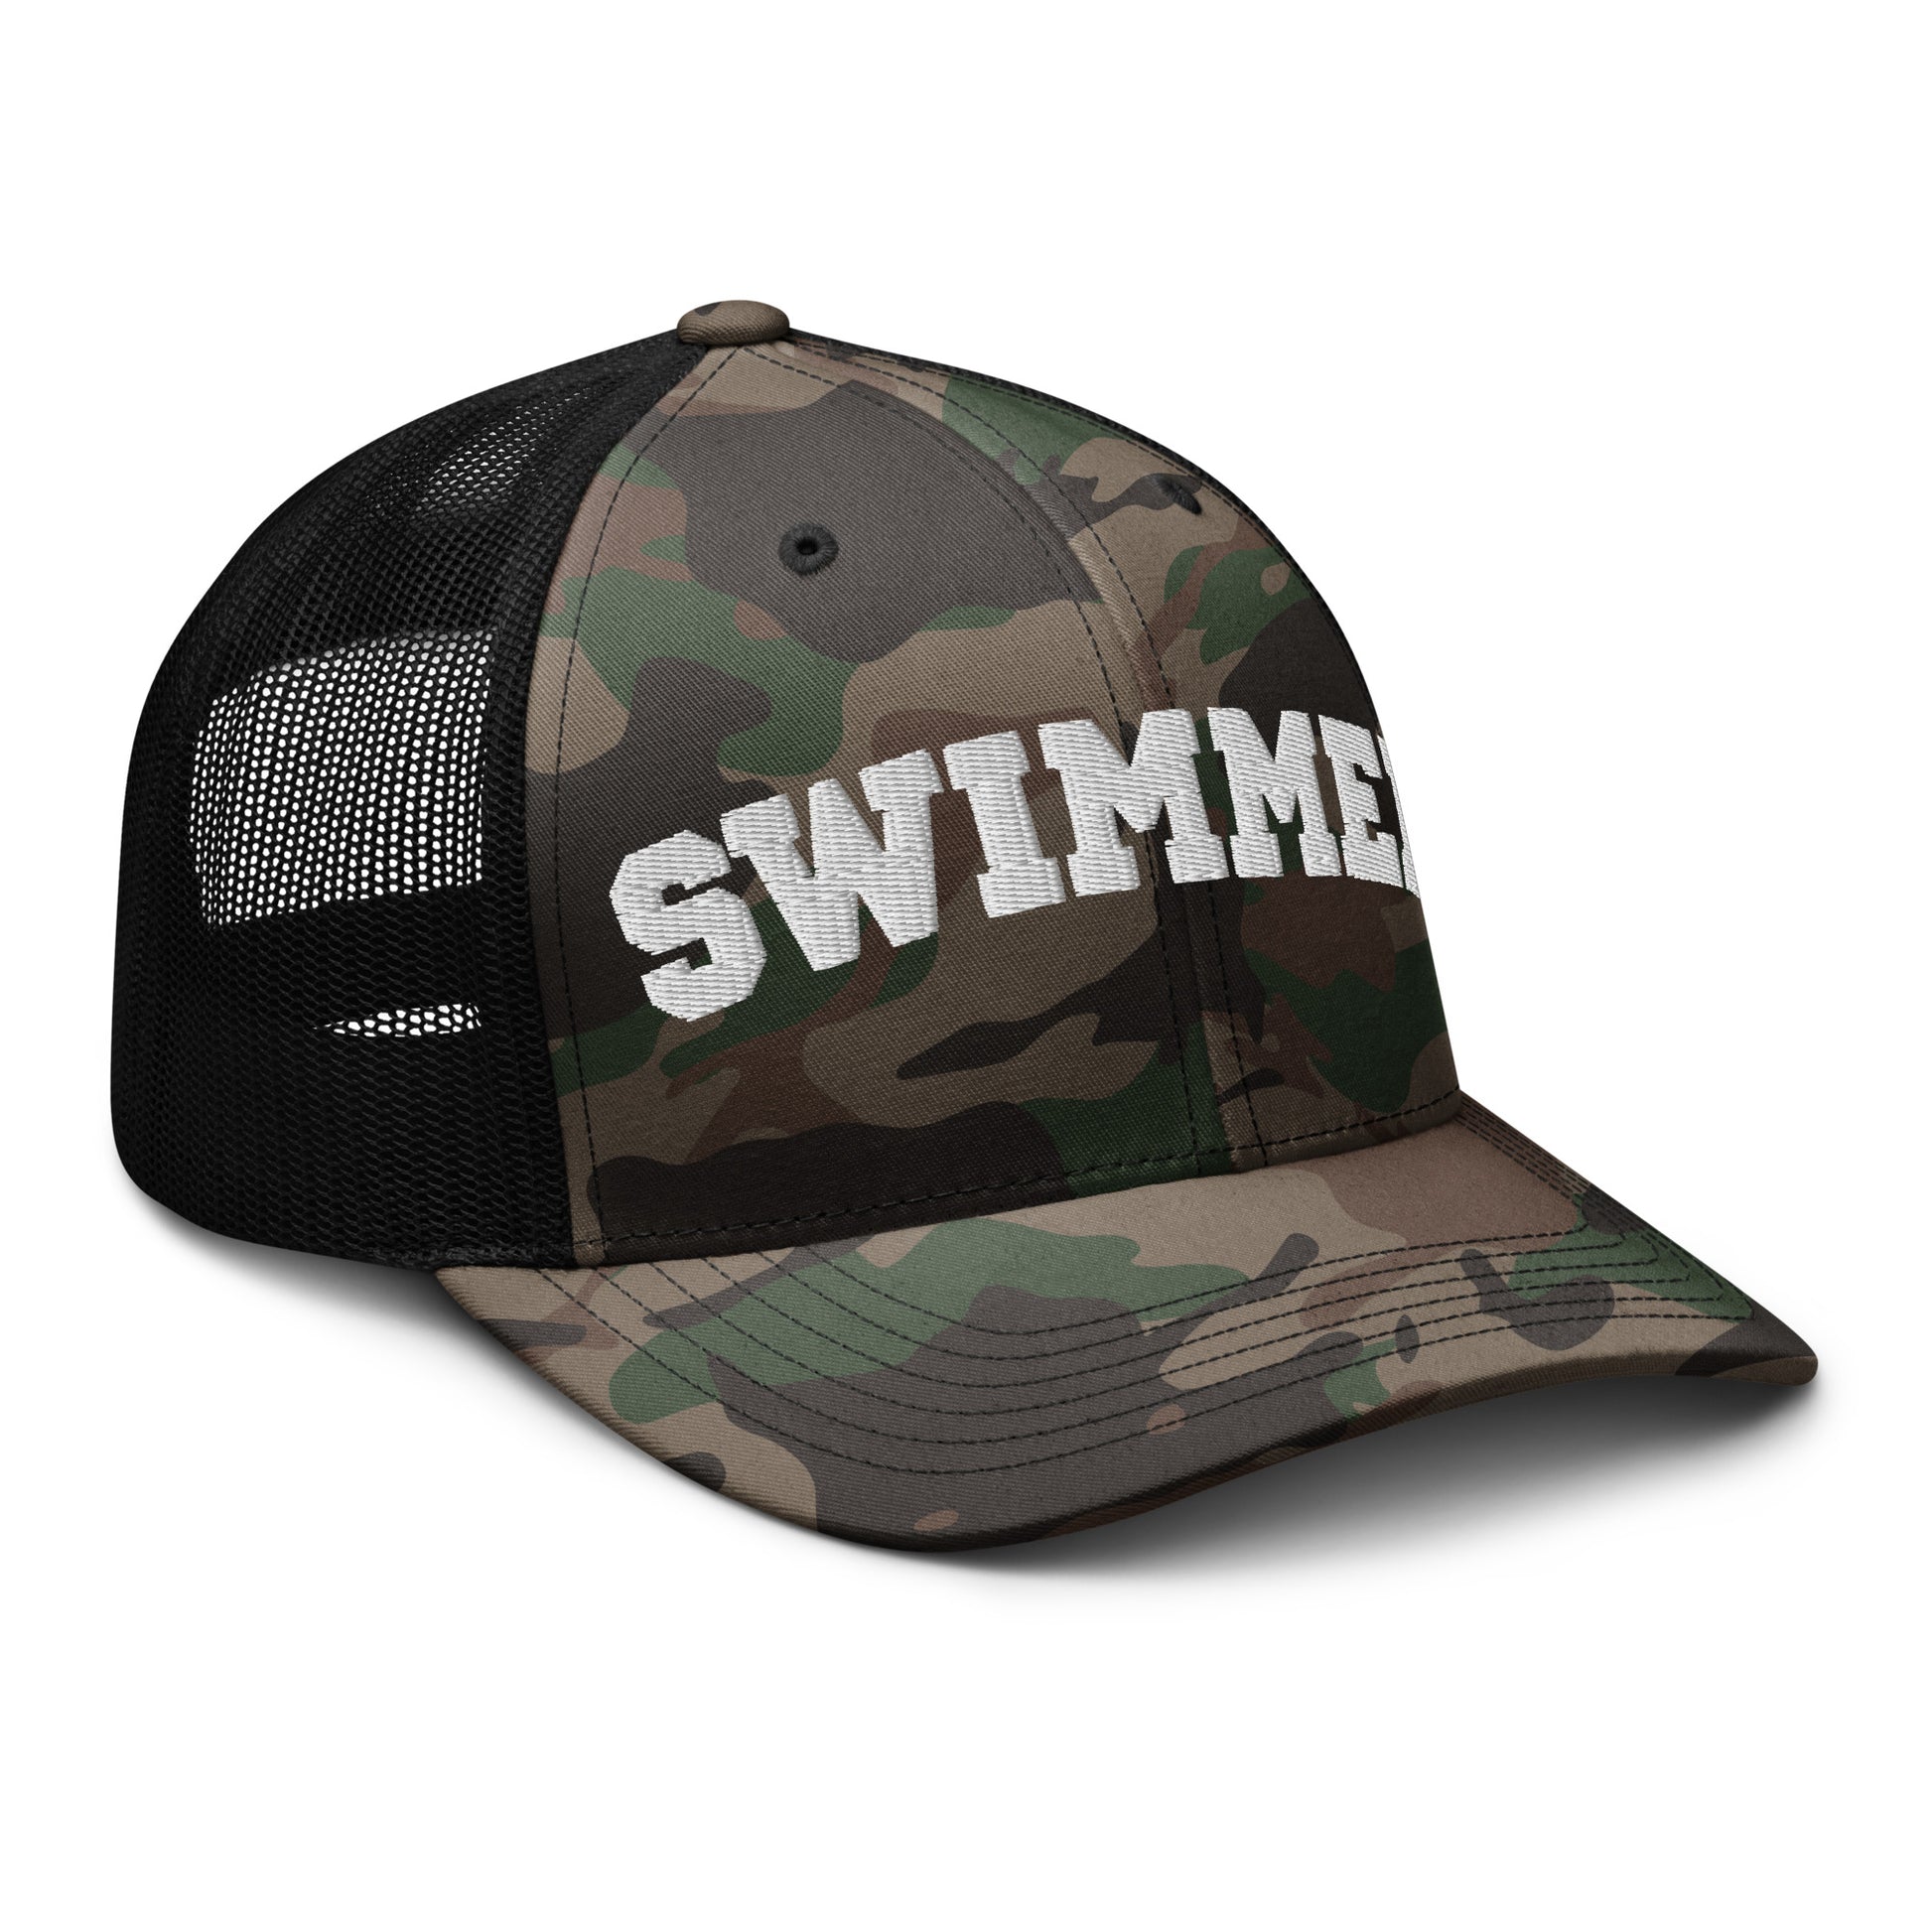 Camouflage Swimmer Retro Trucker Hat - TrendySwimmer